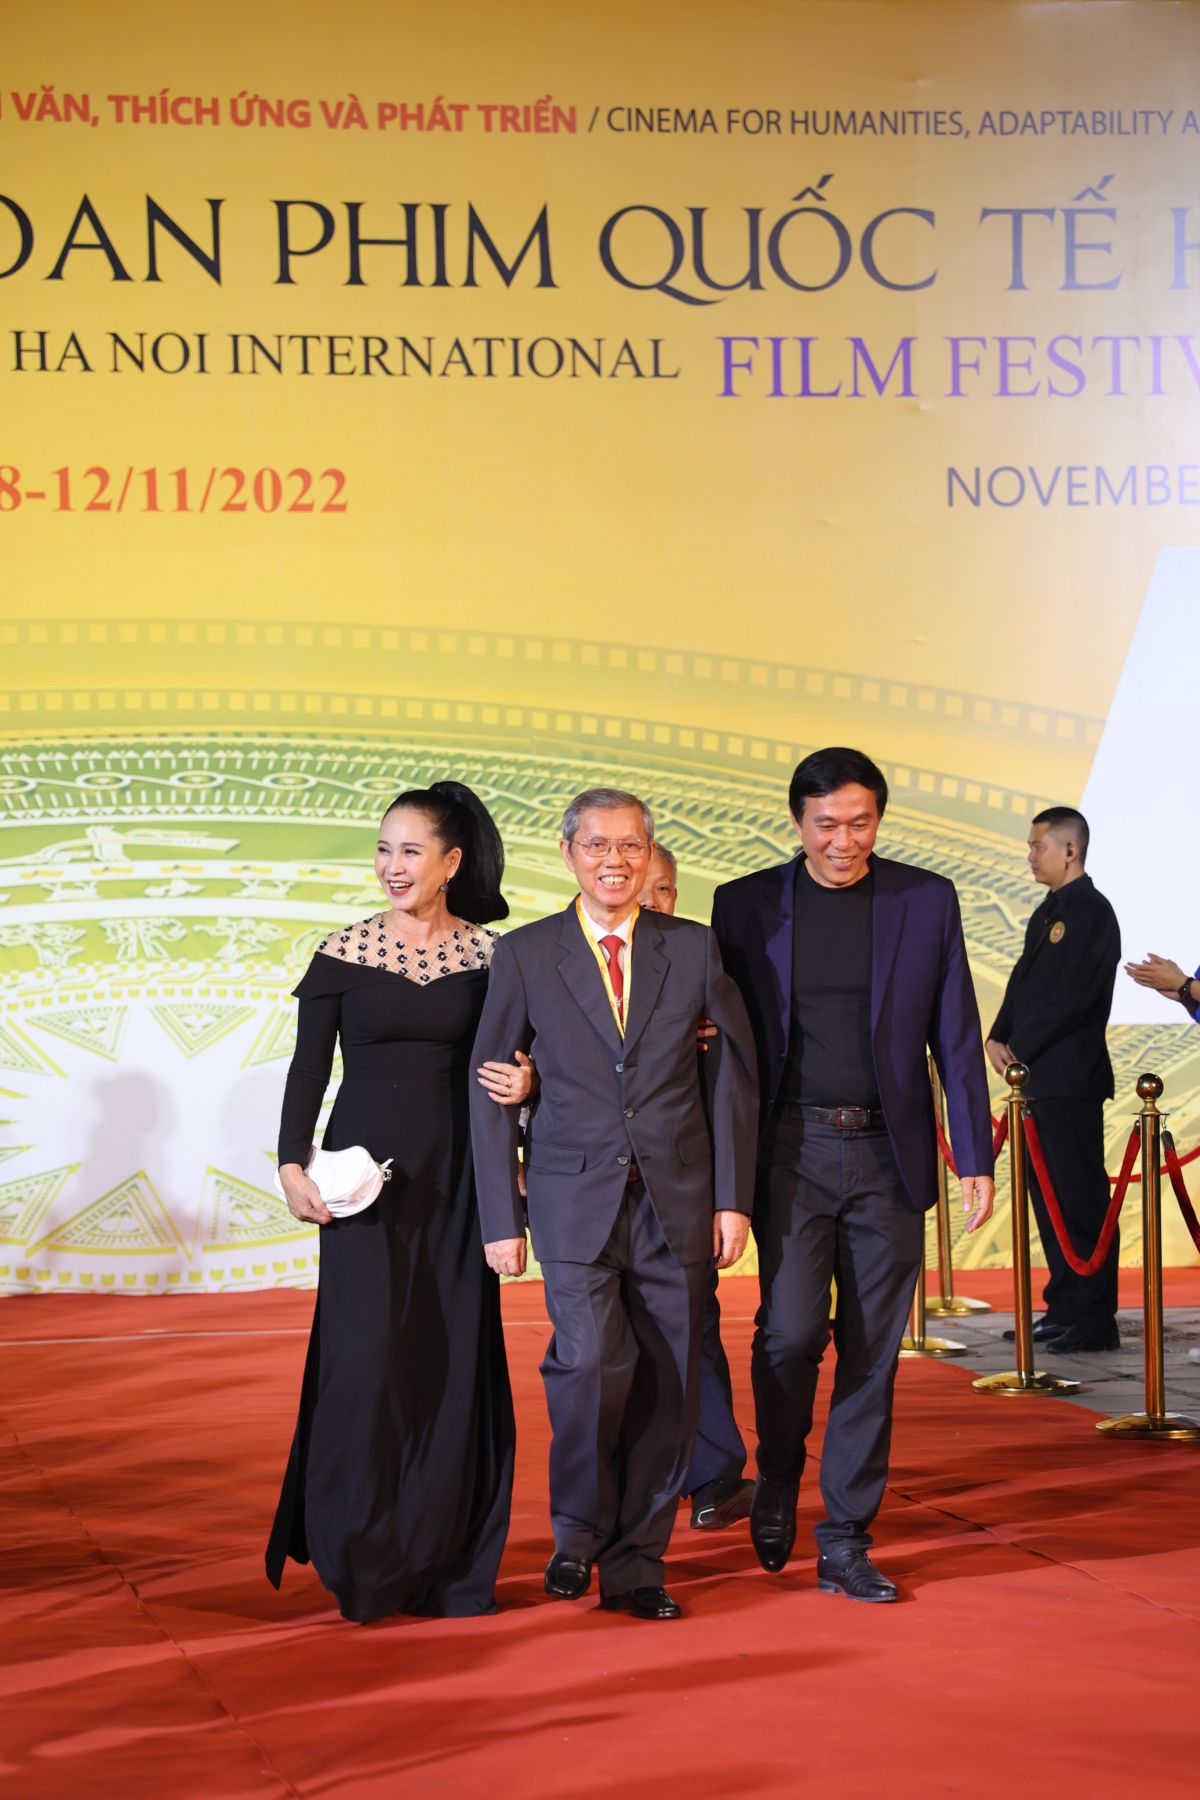 Nhiều ngôi sao truyền hình, điện ảnh trong nước đã tham dự Lễ khai mạc. Vợ chồng Nghệ sỹ Nhân dân Lan Hương - nghệ sỹ Đỗ Kỷ và nguyên Cục trưởng Cục Điện ảnh Trọng Hồng (giữa) cùng đến dự sự kiện.
 